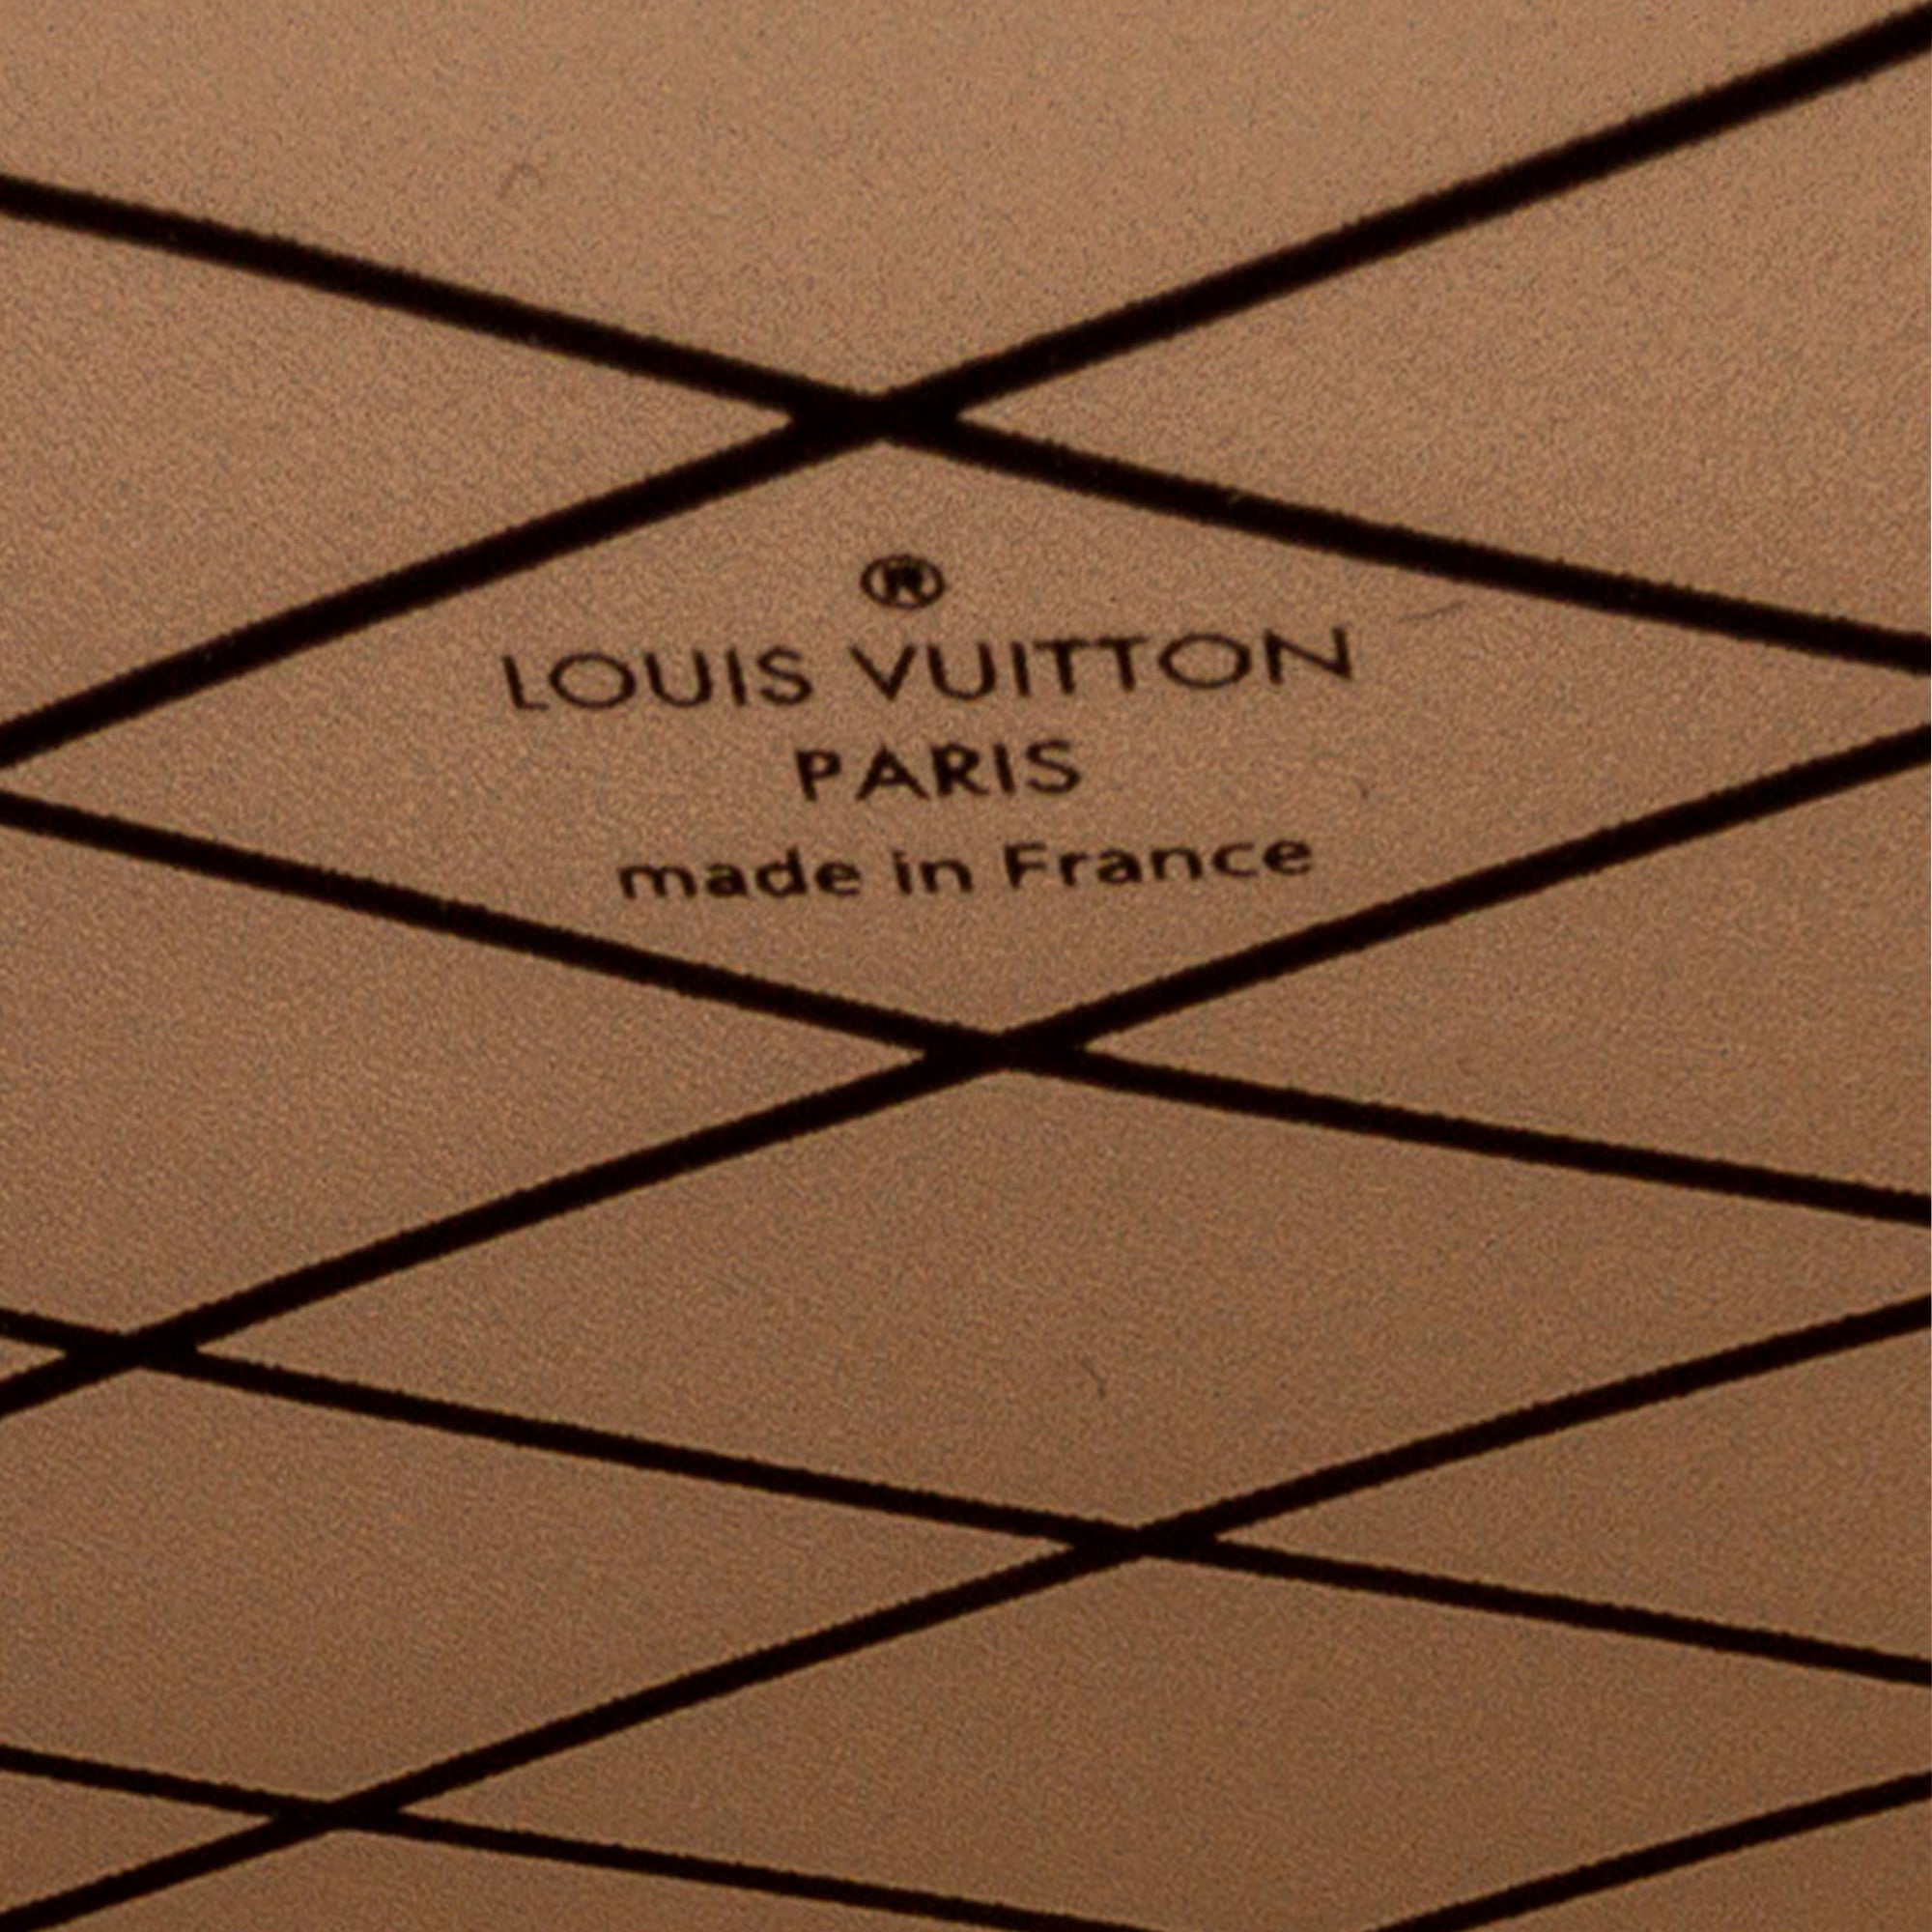 Like New) Louis Vuitton Monogram Petite Malle V Crossbody Bag 7WK6KJW –  KimmieBBags LLC